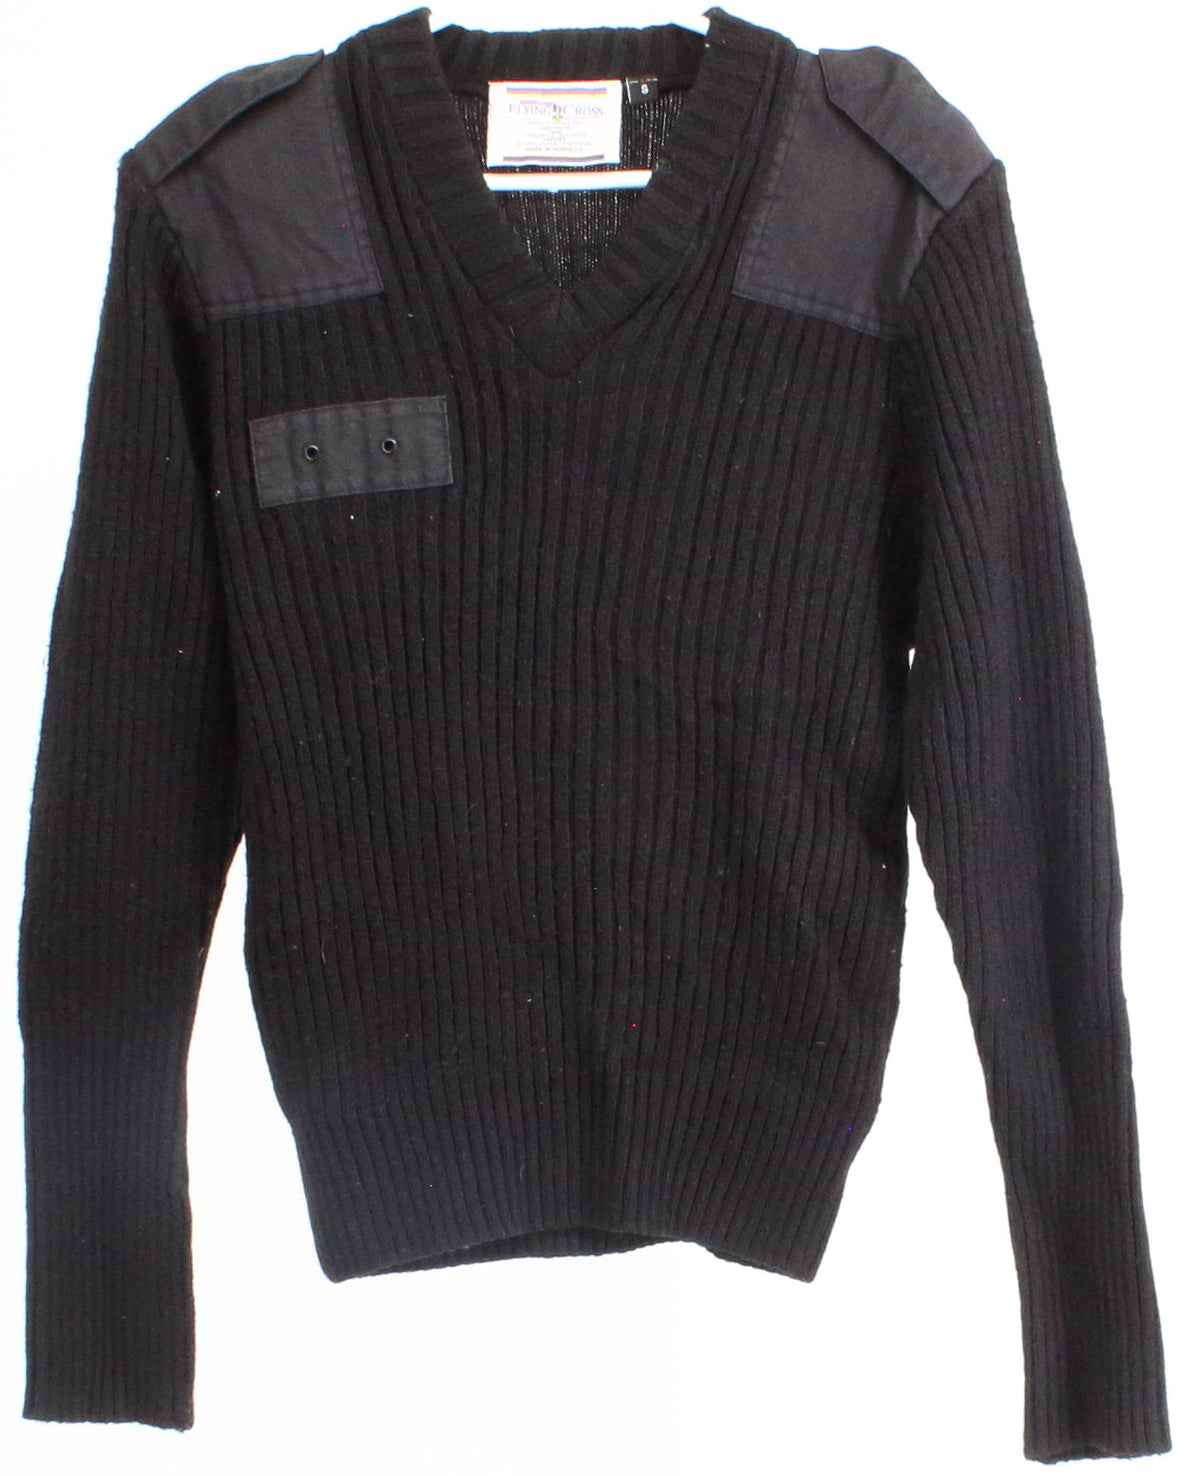 Flying Cross Black V-Neck Sweater